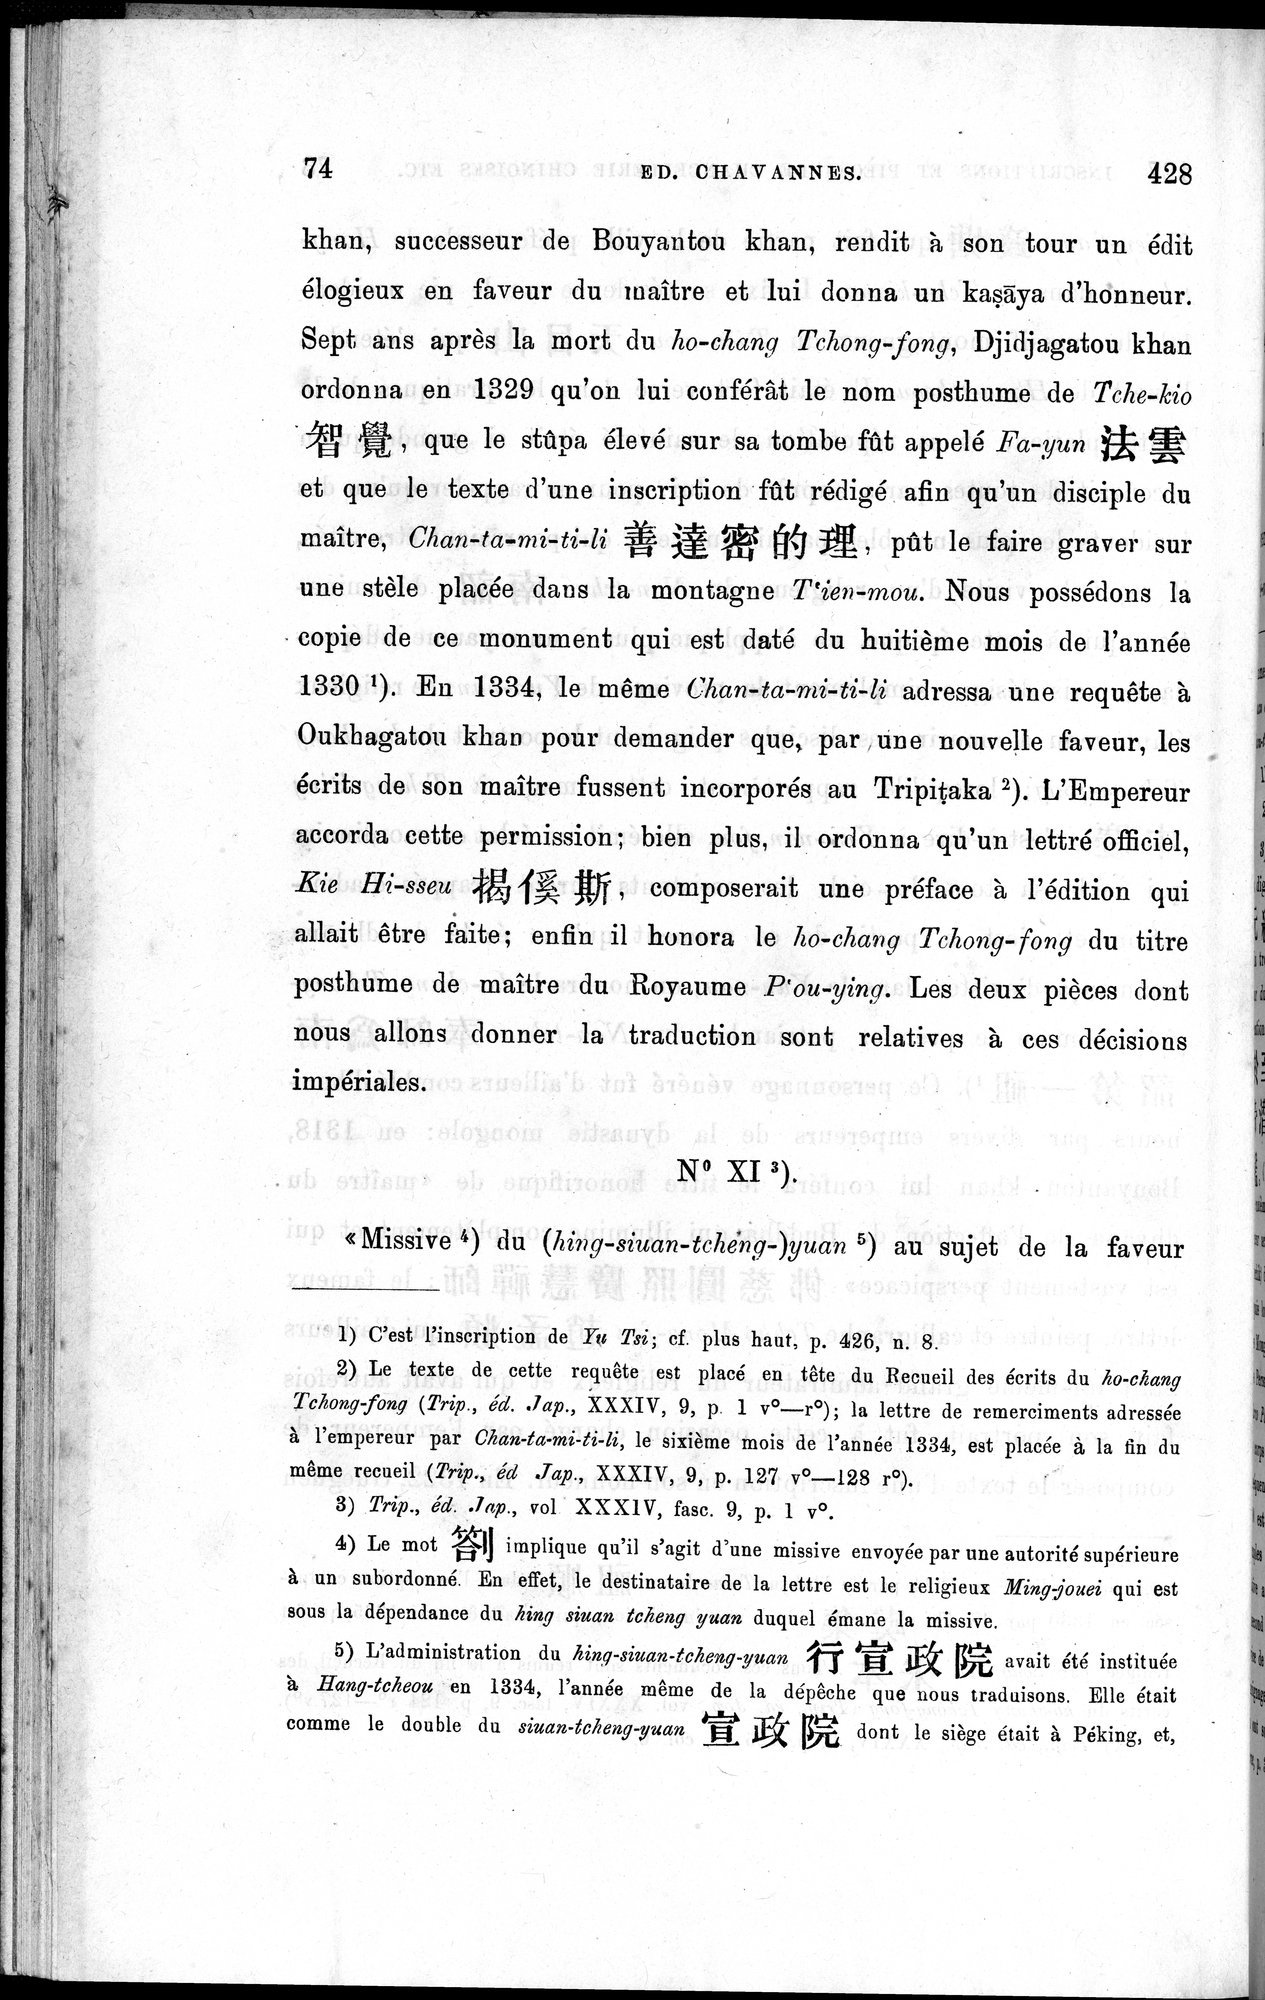 Inscriptions et pièces de Chancellerie Chinoises de l'époque mongol : vol.1 / Page 88 (Grayscale High Resolution Image)